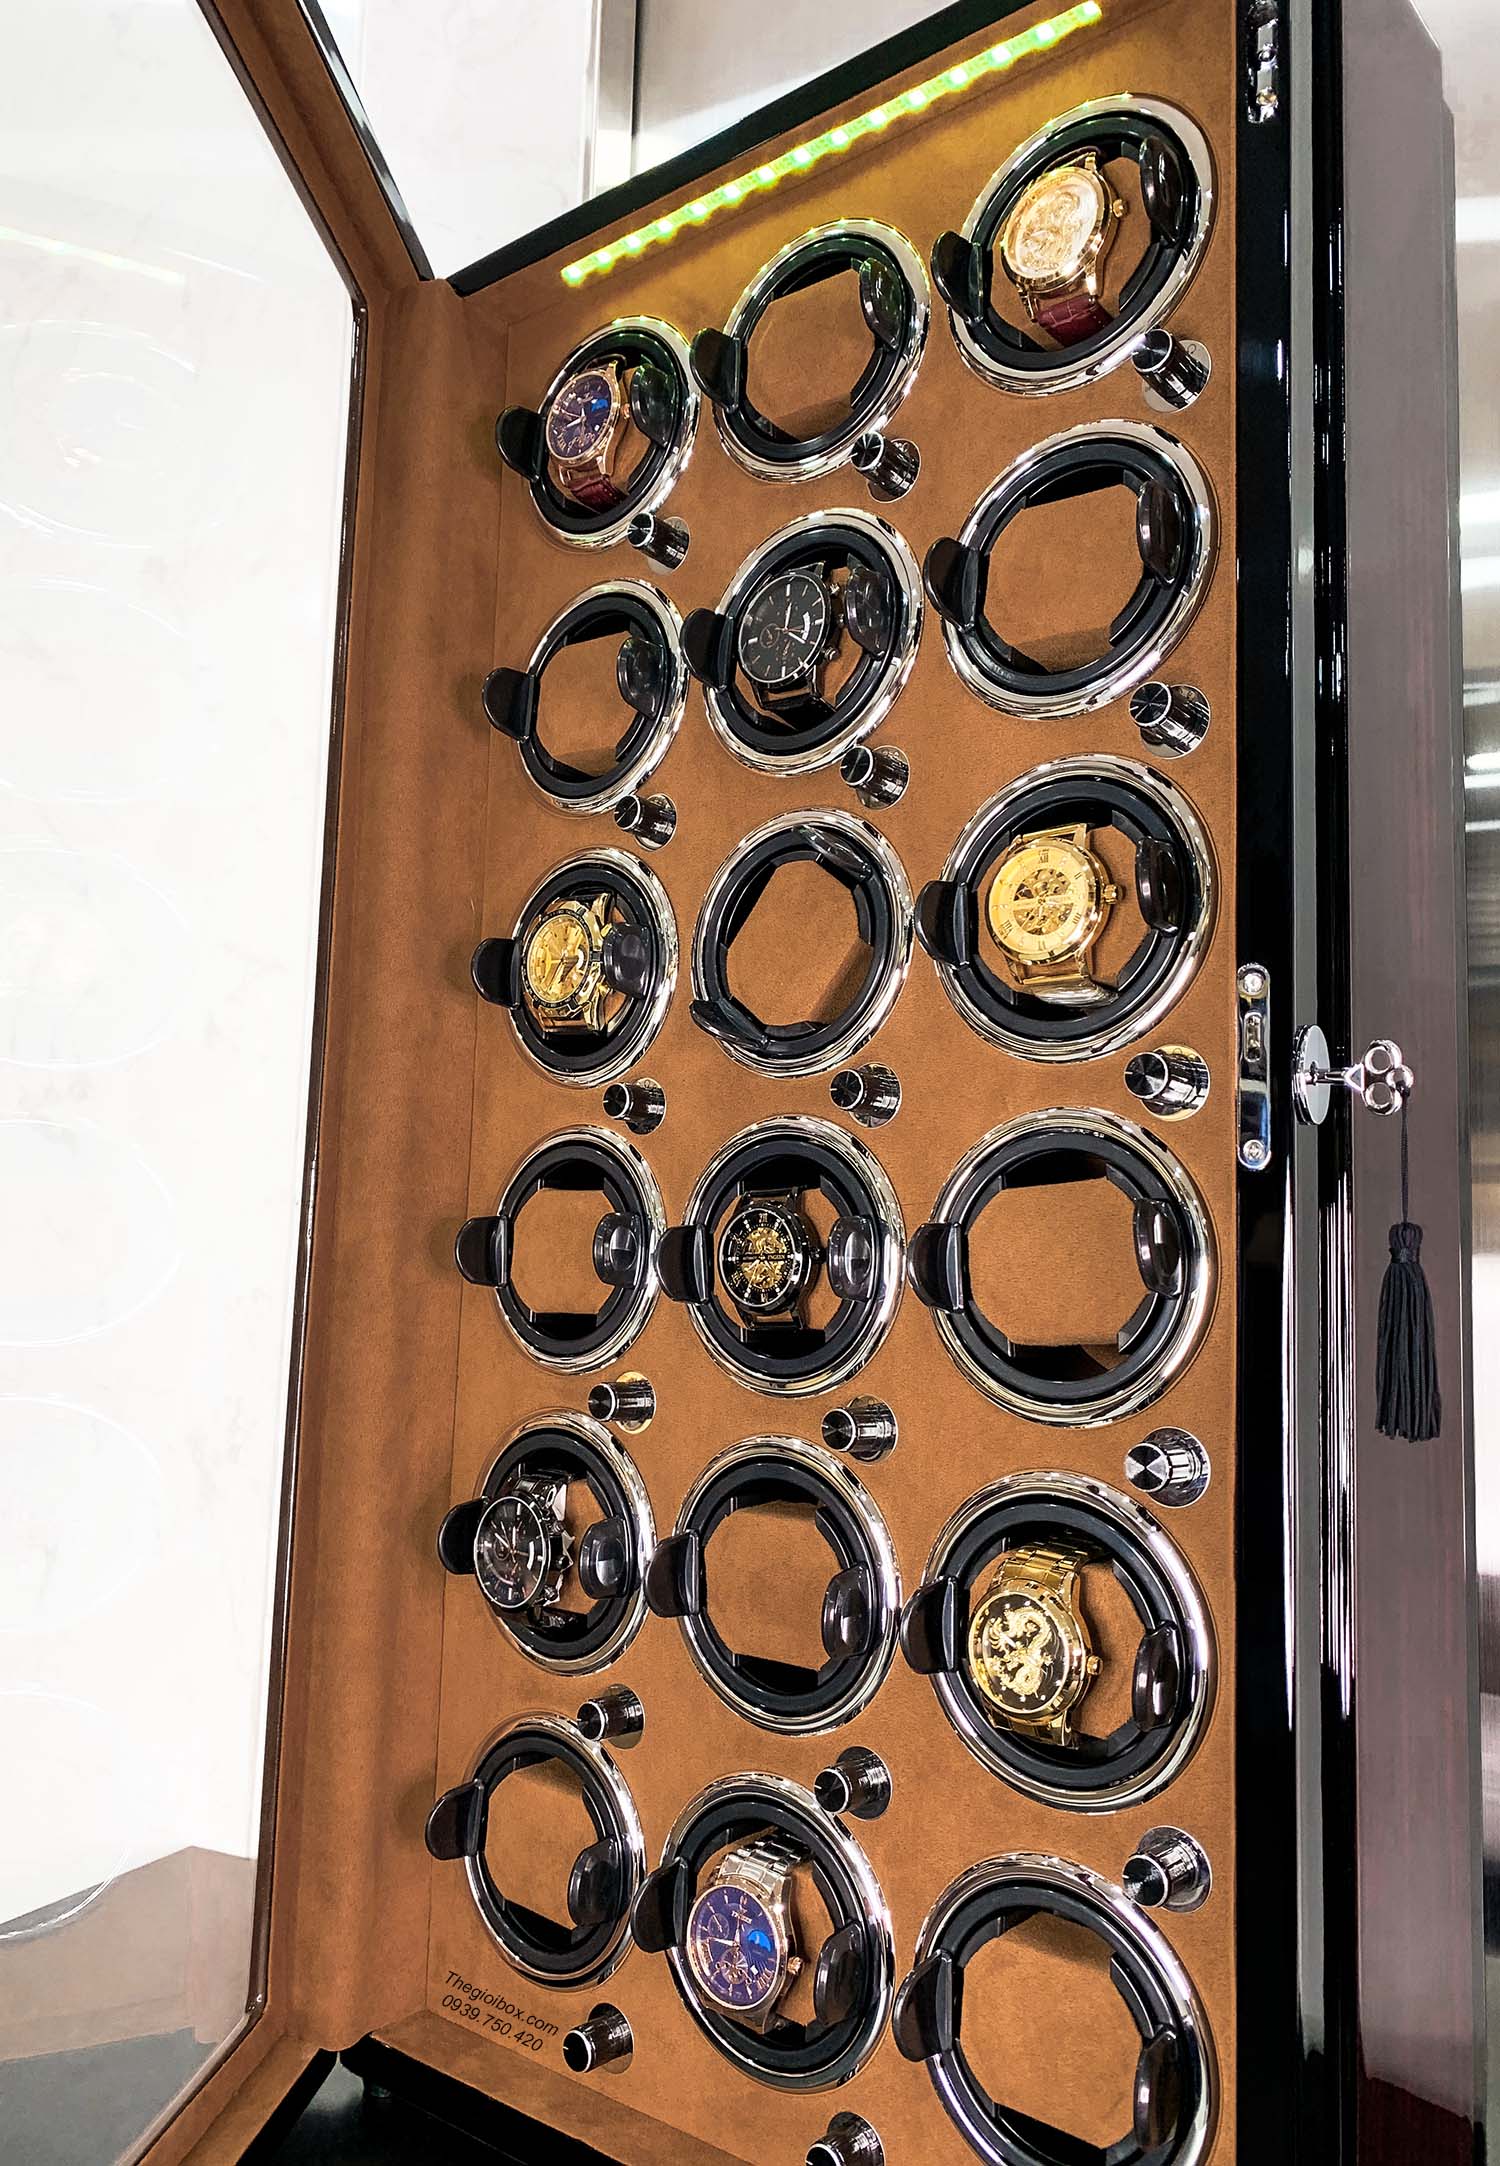 Hộp đồng hồ cơ ACBOW 18 ngăn xoay nội thất nhung nâu + LED + khóa an toàn